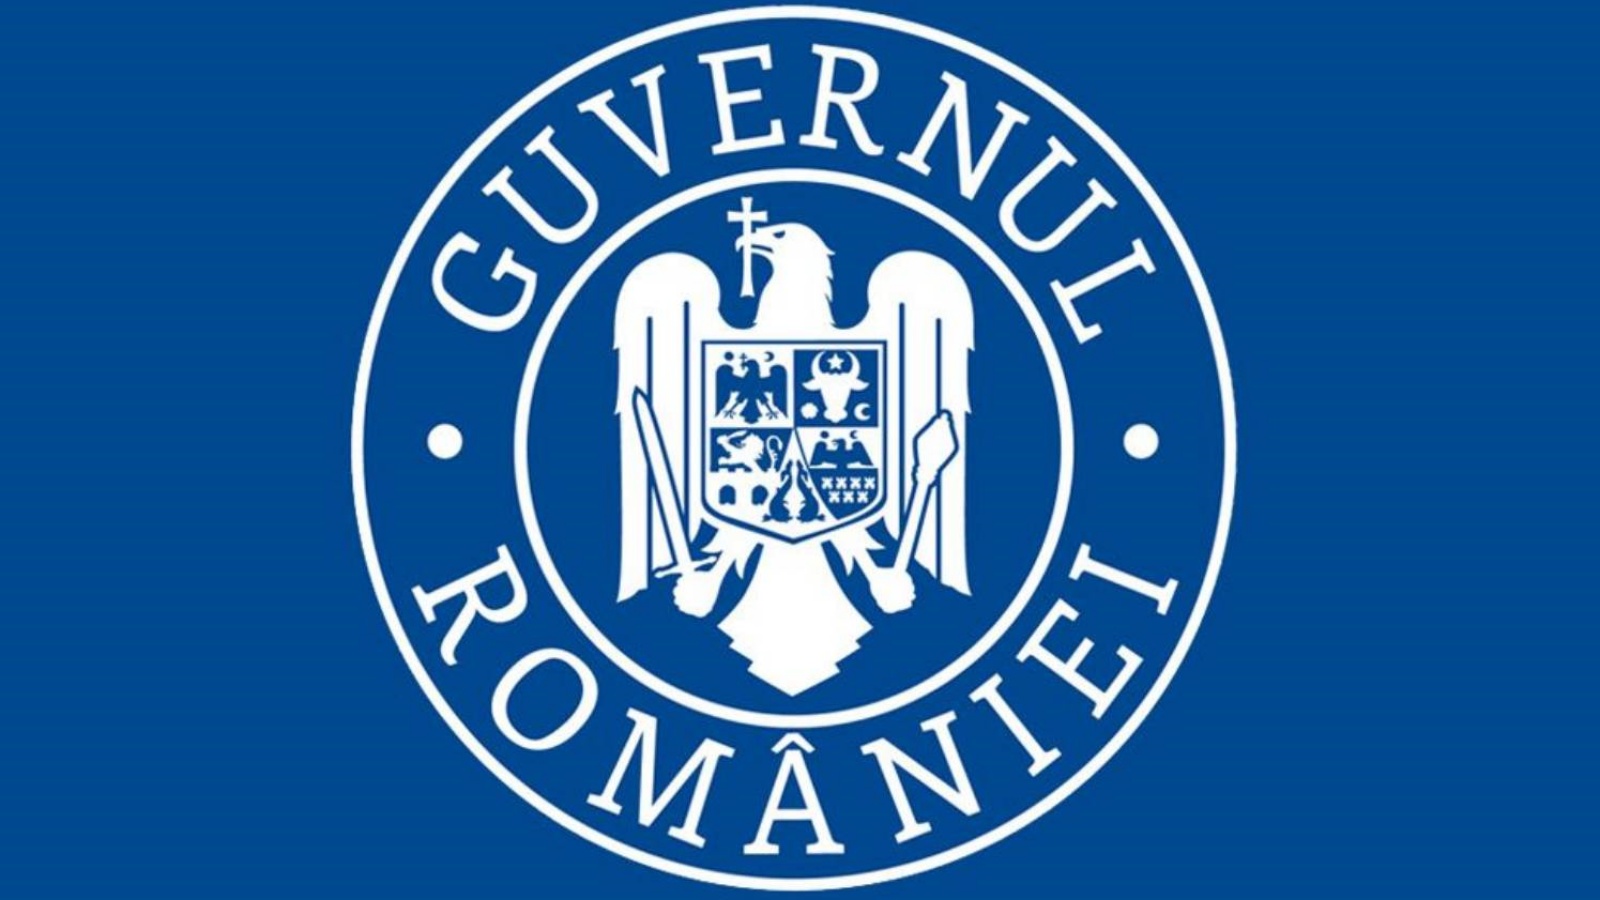 Guvernul Romaniei a Prelungit Starea de Alerta pana in Ianuarie 2022